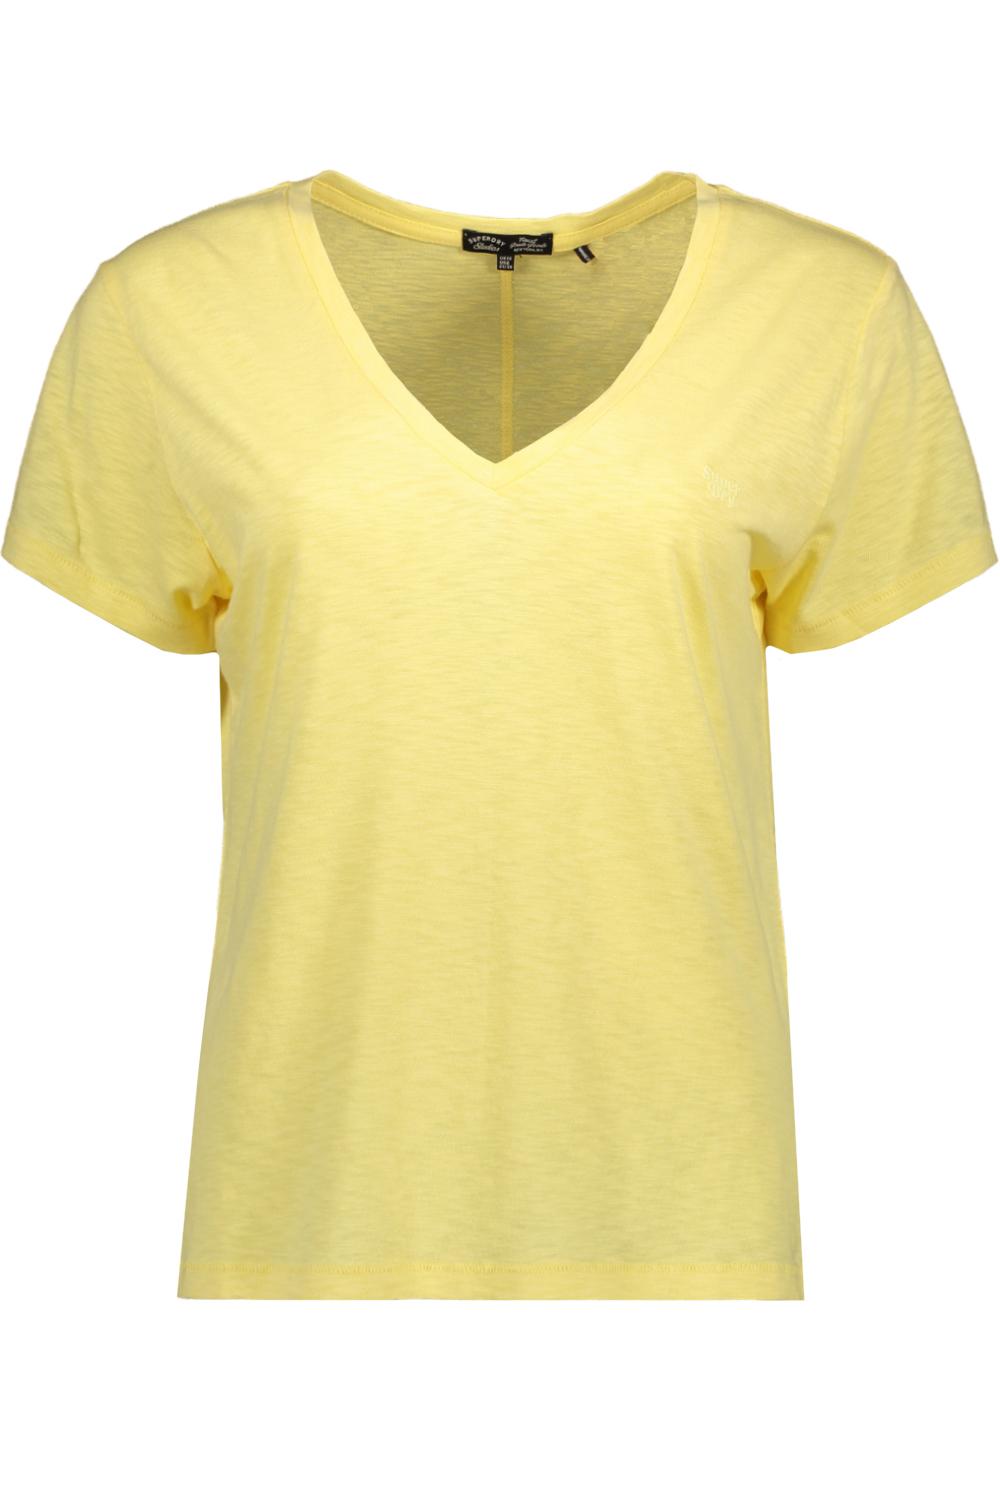 studios slub emb vee tee superdry yellow pale t-shirt qlc w1011181a